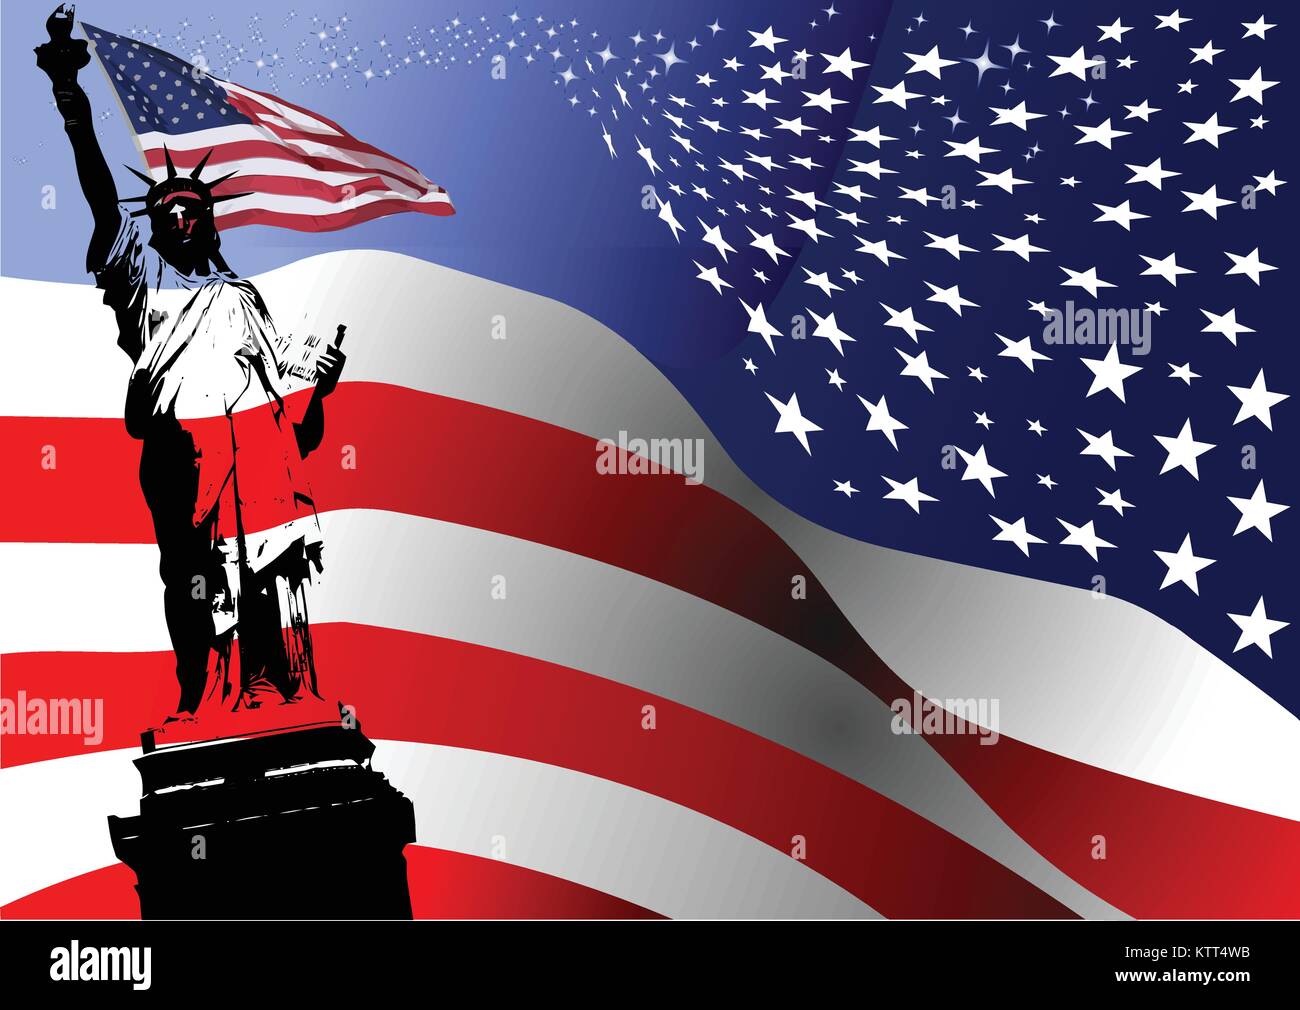 Amerikanische Flagge mit Liberty Statue Bild. Vektor-illustration Stock Vektor